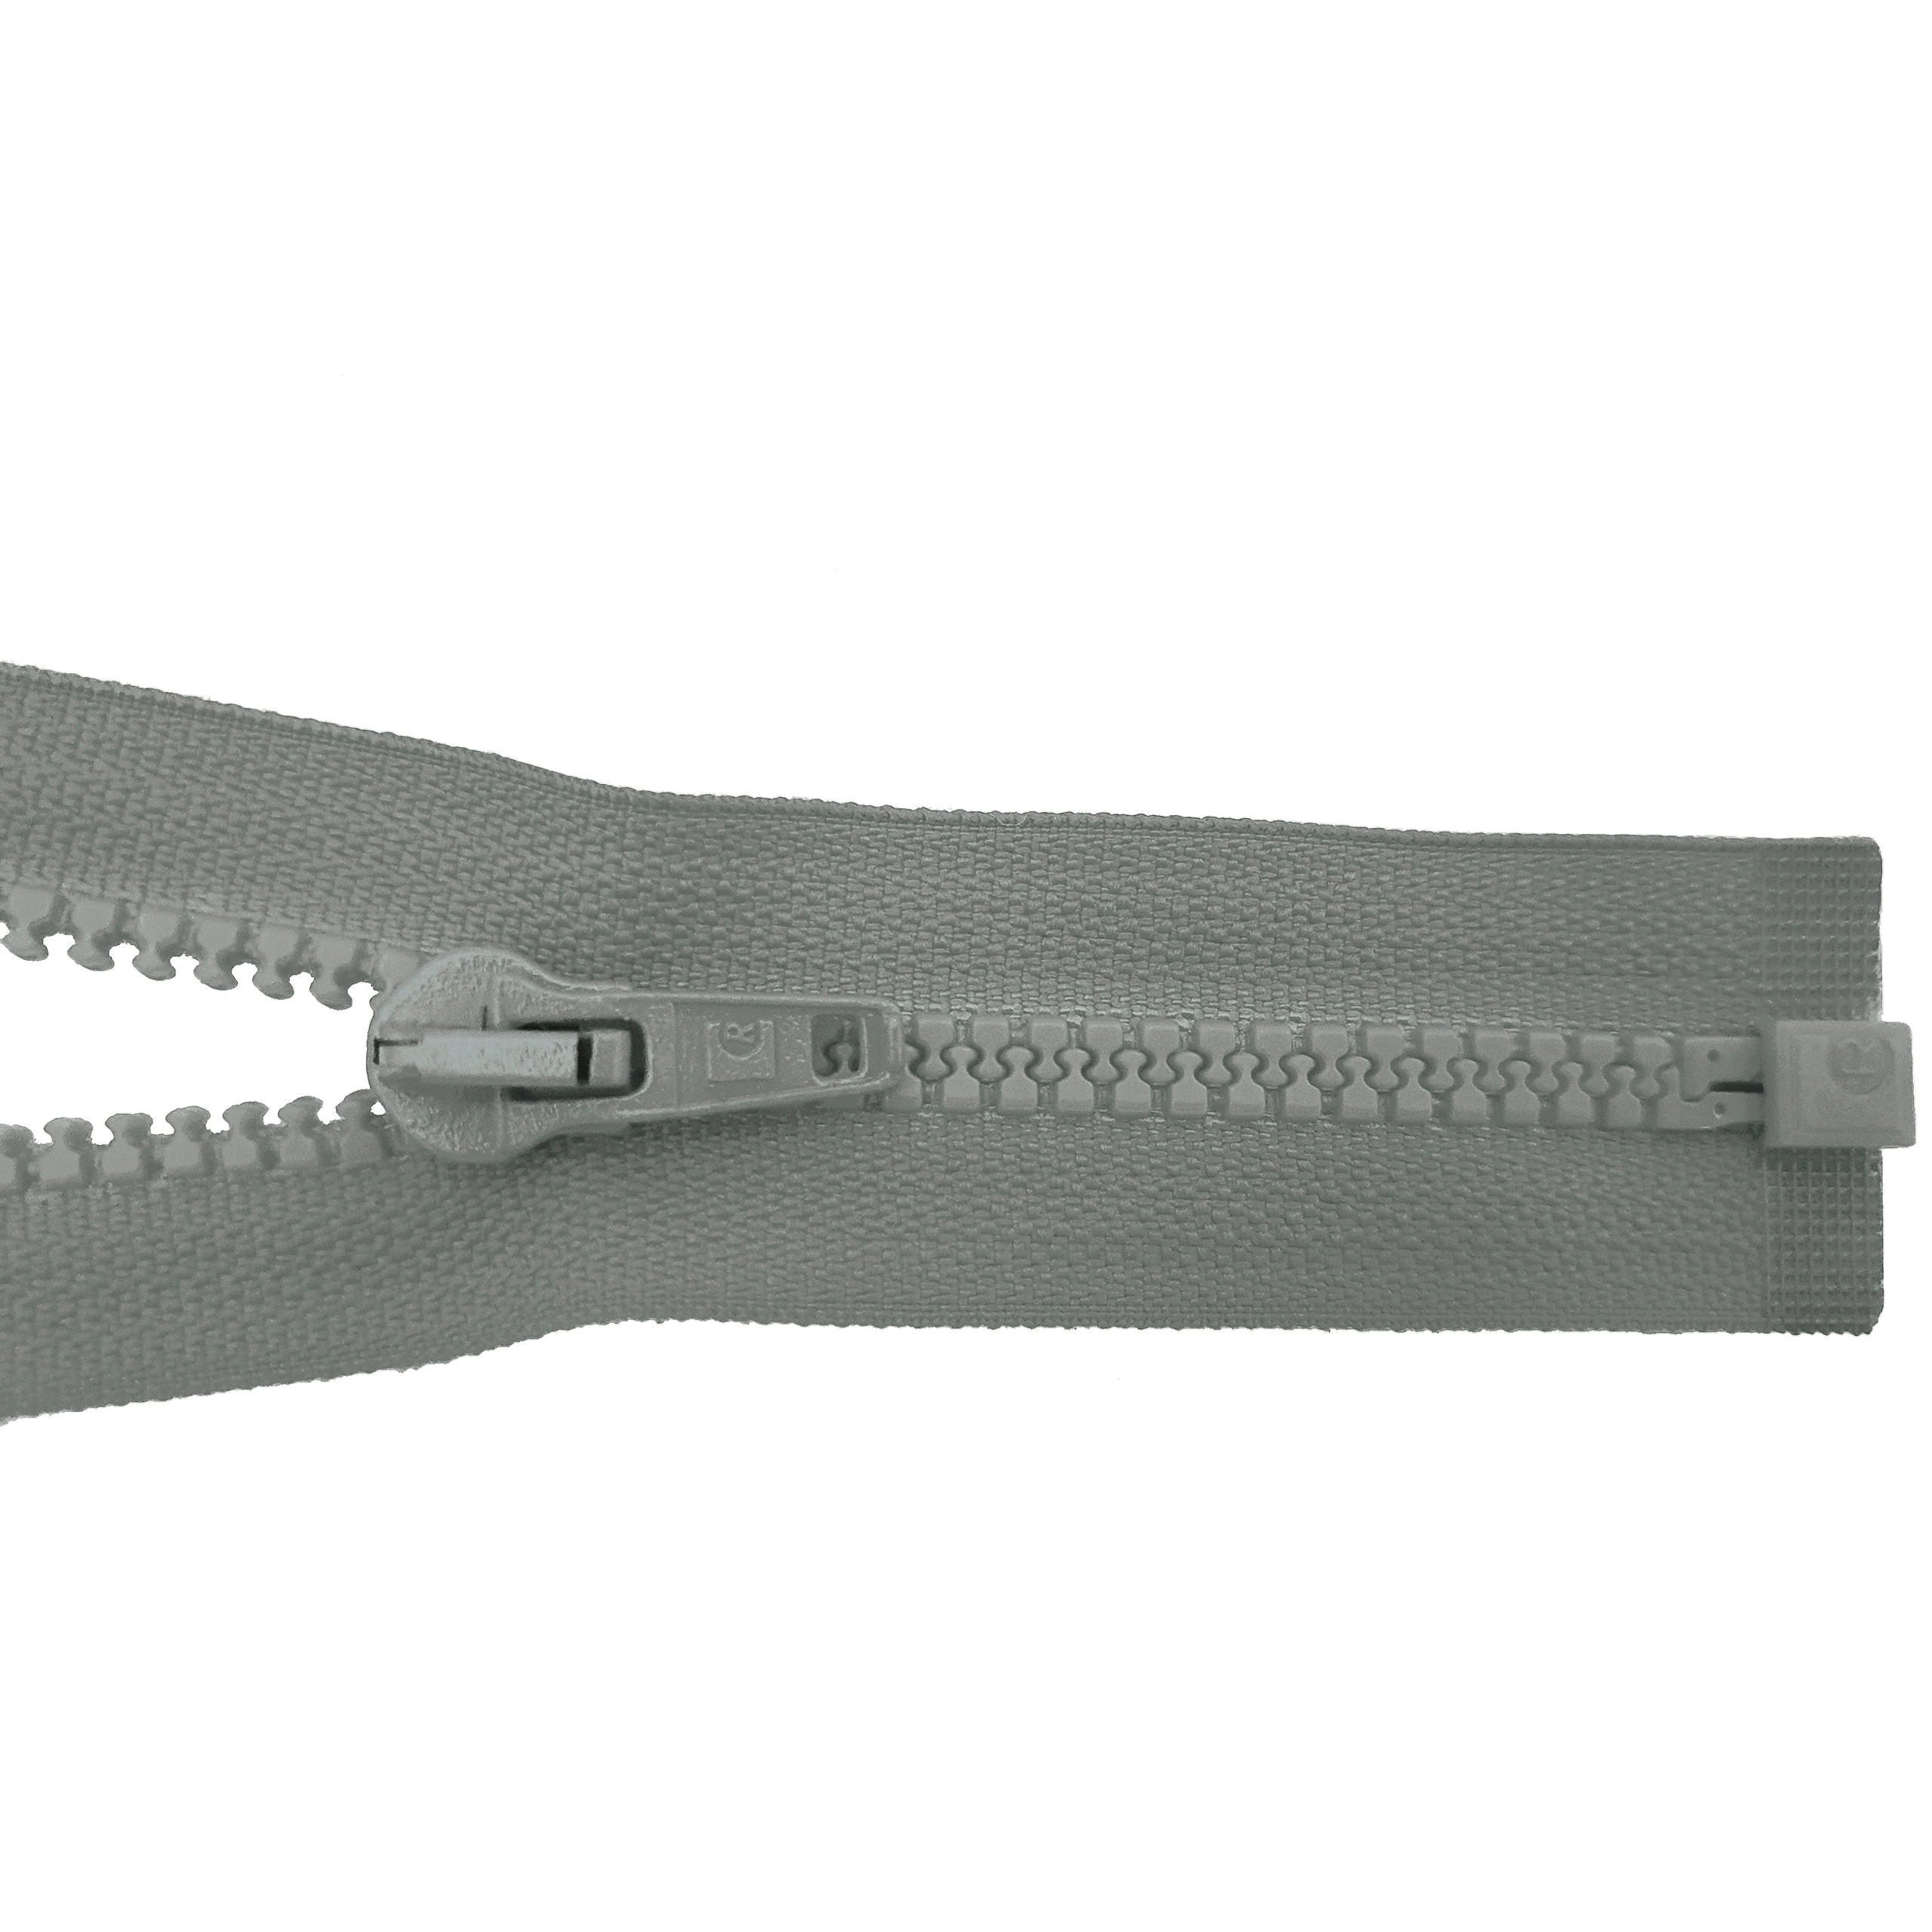 Reißverschluss 80cm, teilbar, Kstoff Zähne breit, grau, hochwertiger Marken-Reißverschluss von Rubi/Barcelona